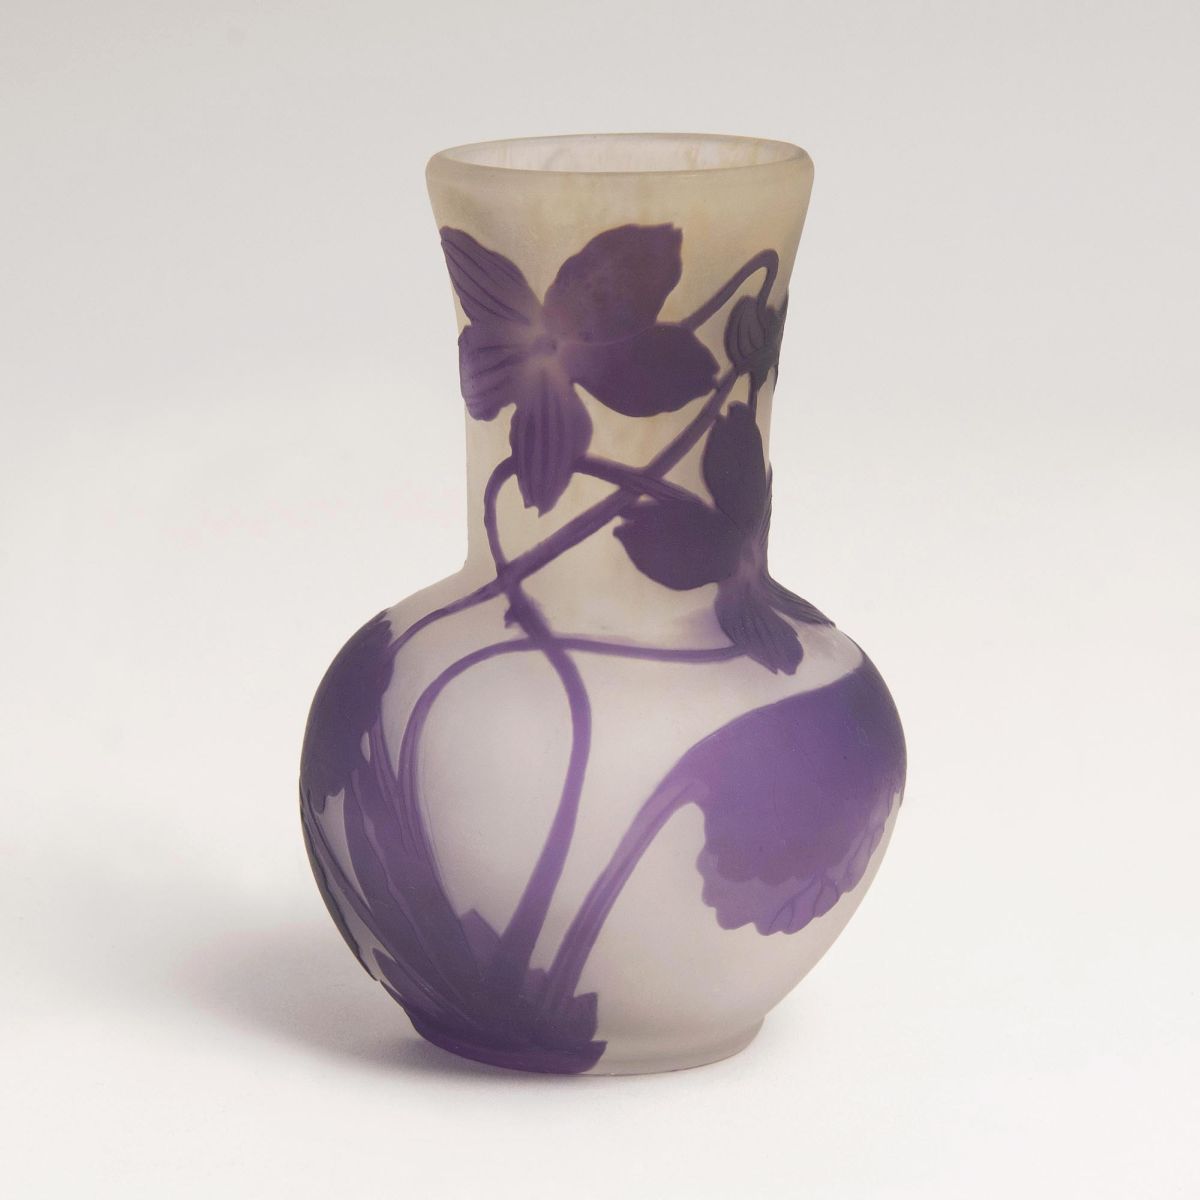 A Small Art Nouveau Vase with Violets